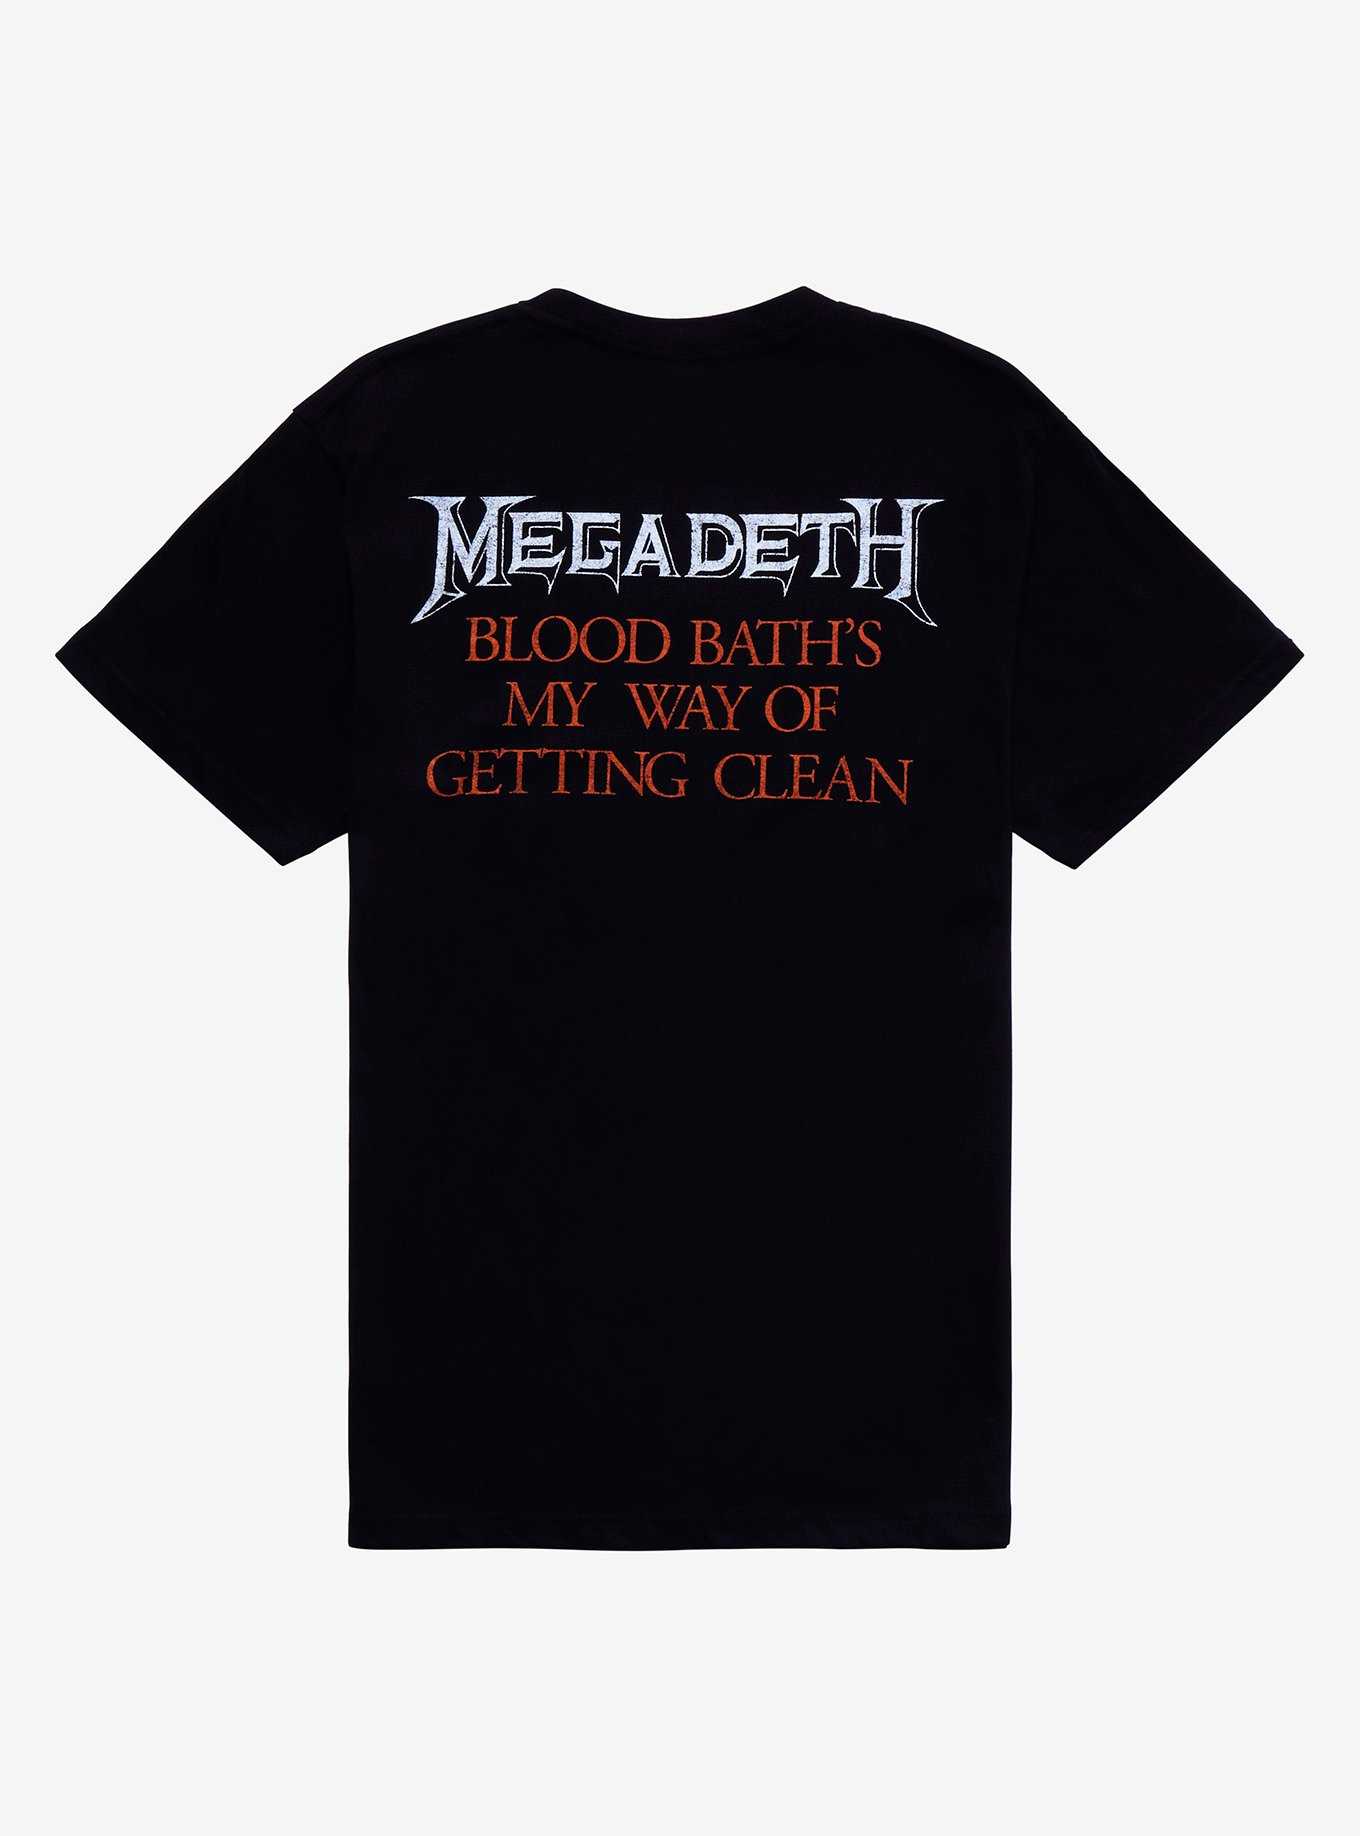 Megadeth Black Friday T-Shirt, , hi-res